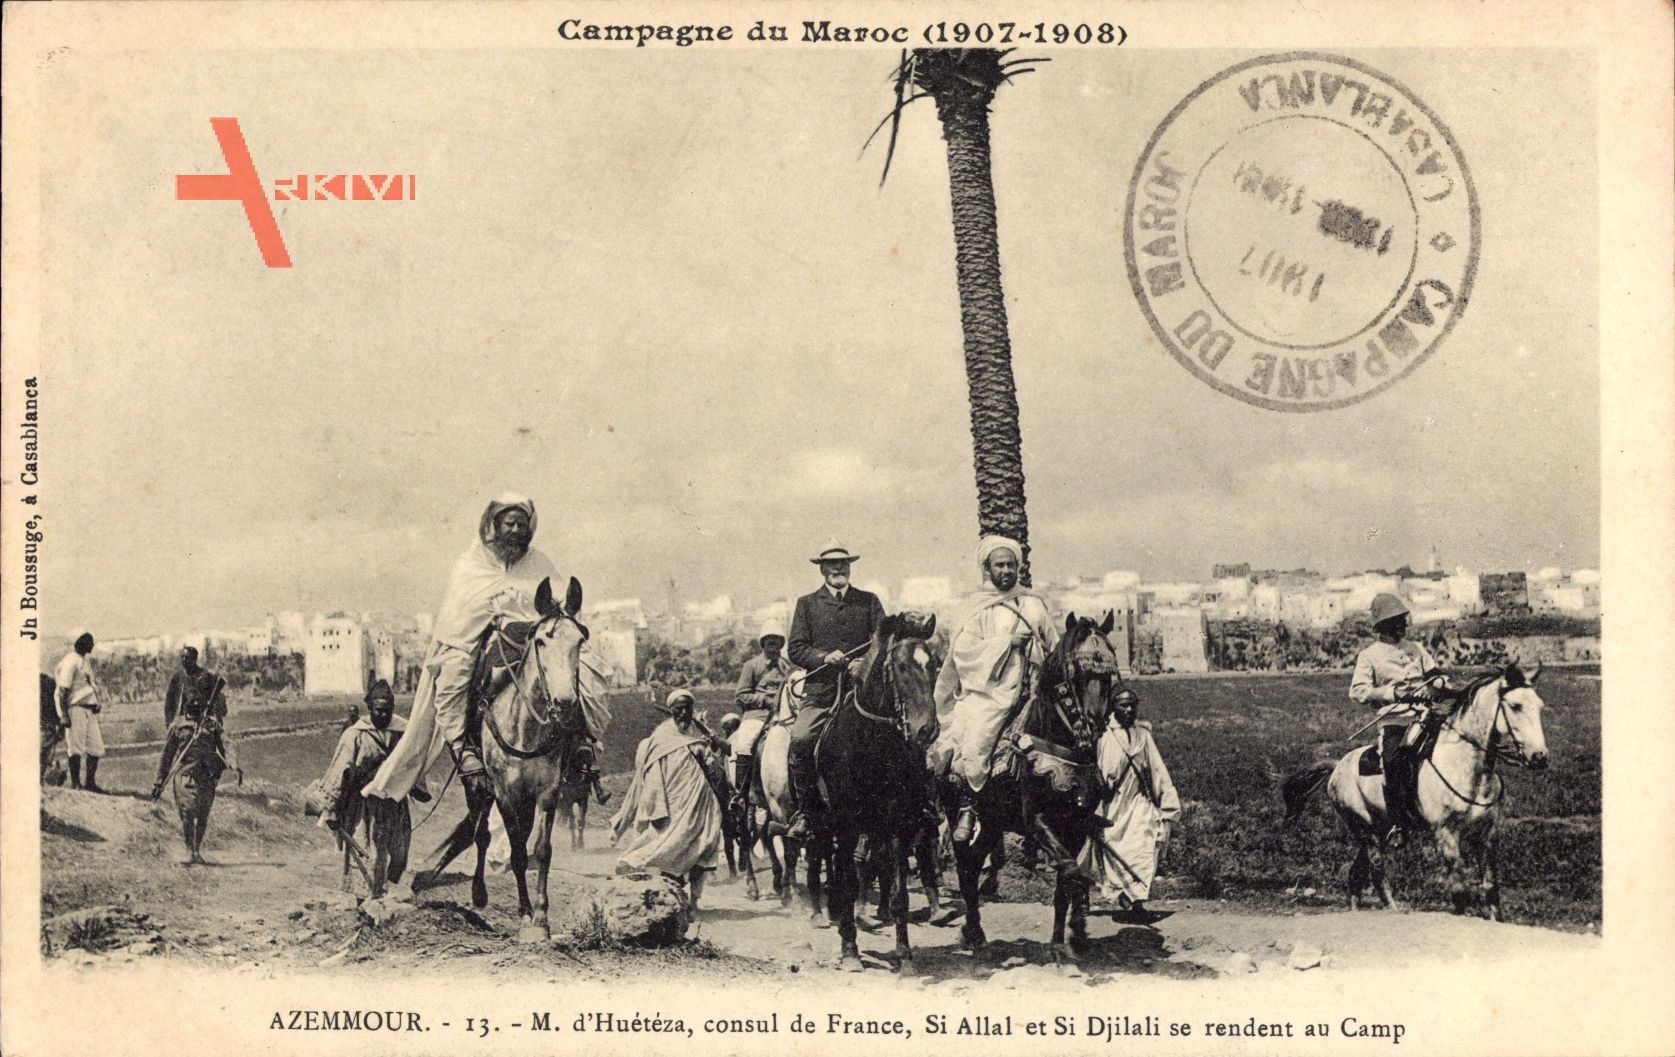 Azemmour Marokko, M. d'Hueteza, consul de France, Si Allal et Djilali